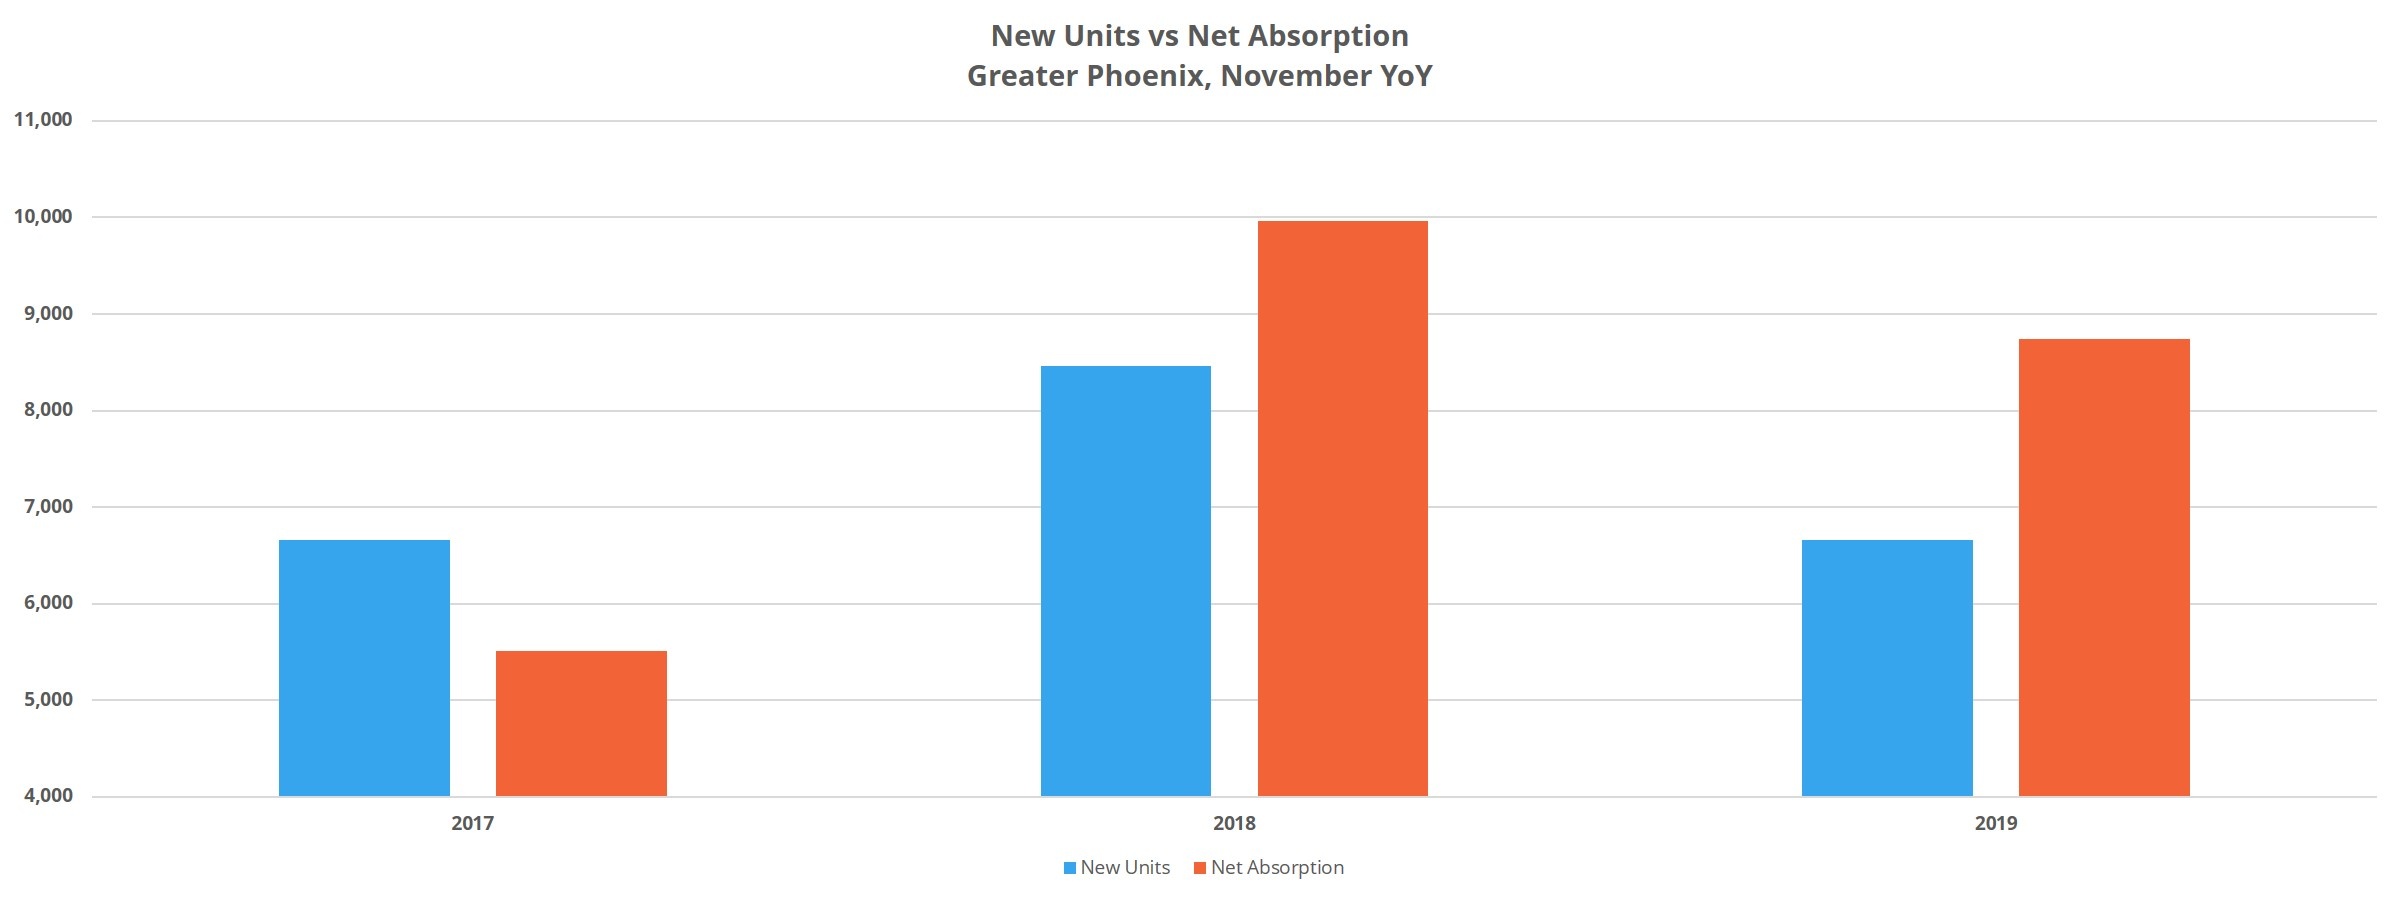 New Units vs Net Absorption in Phoenix